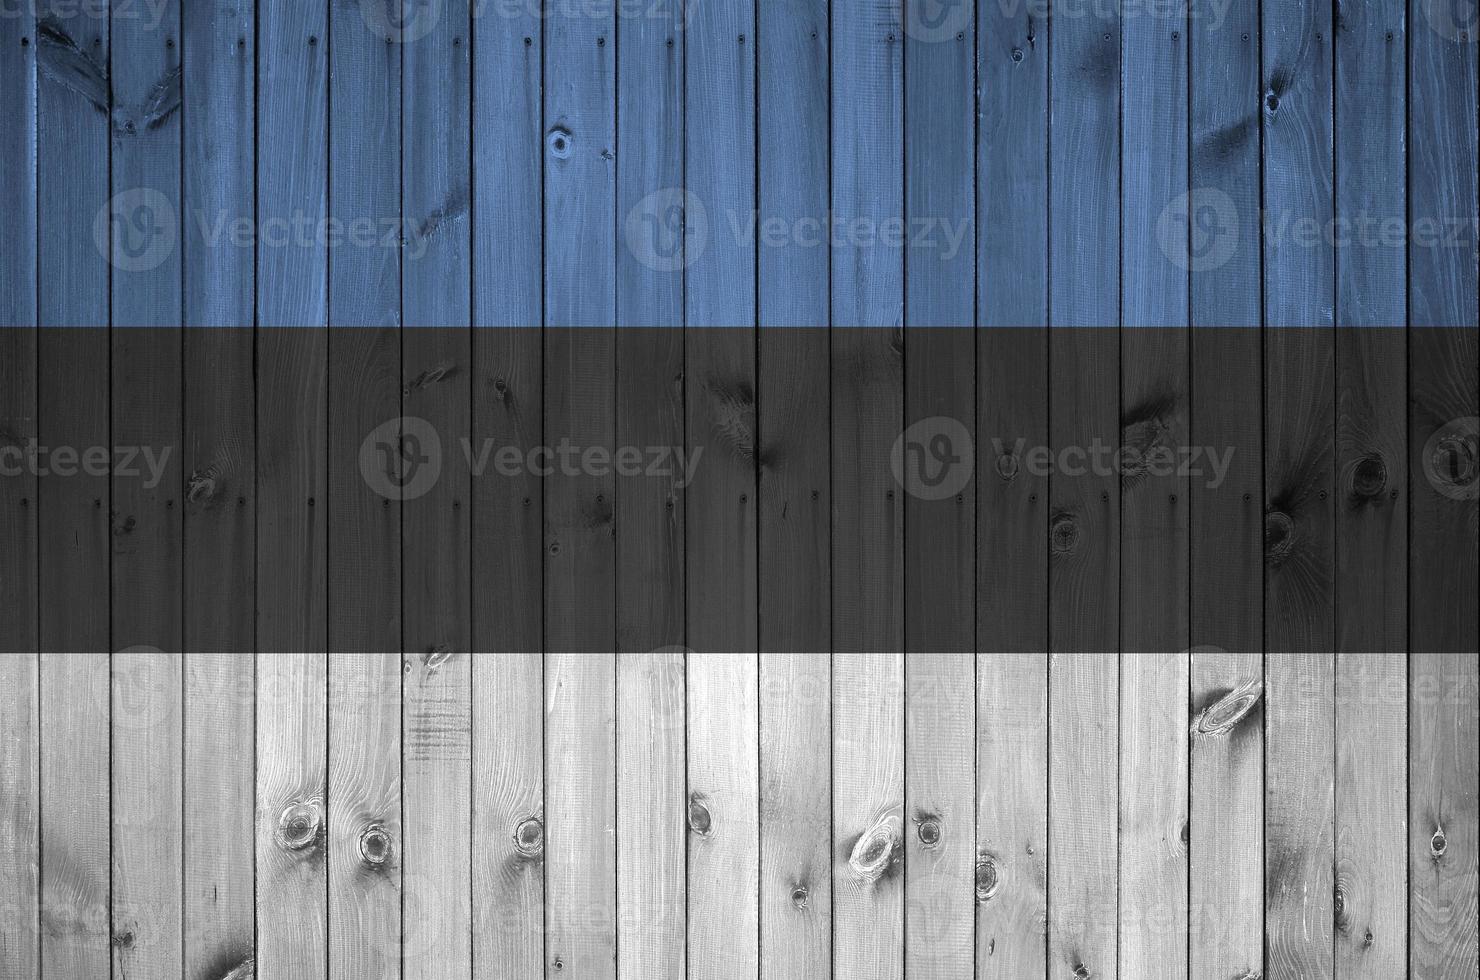 estnische flagge in hellen farben auf alter holzwand dargestellt. strukturierte Fahne auf rauem Hintergrund foto